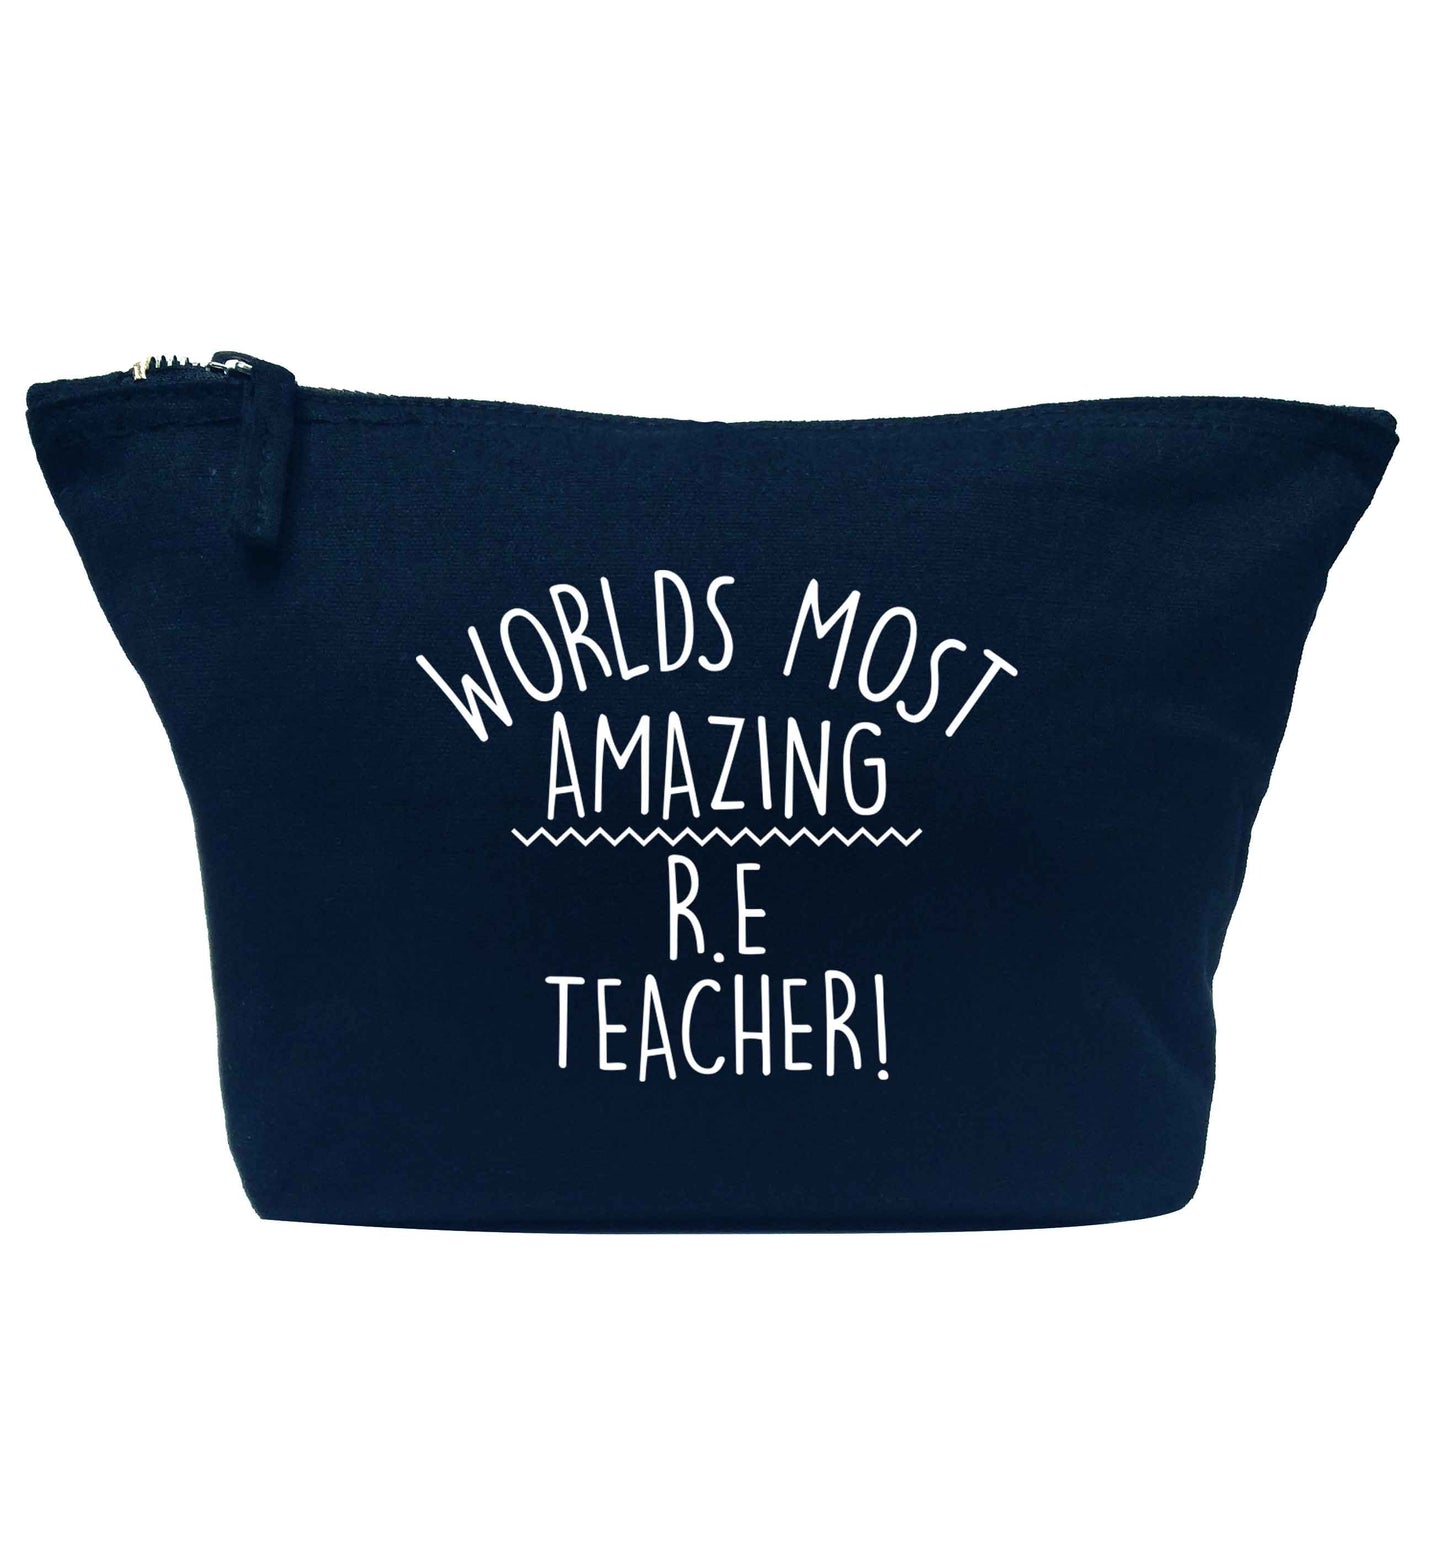 Worlds most amazing R.E teacher navy makeup bag